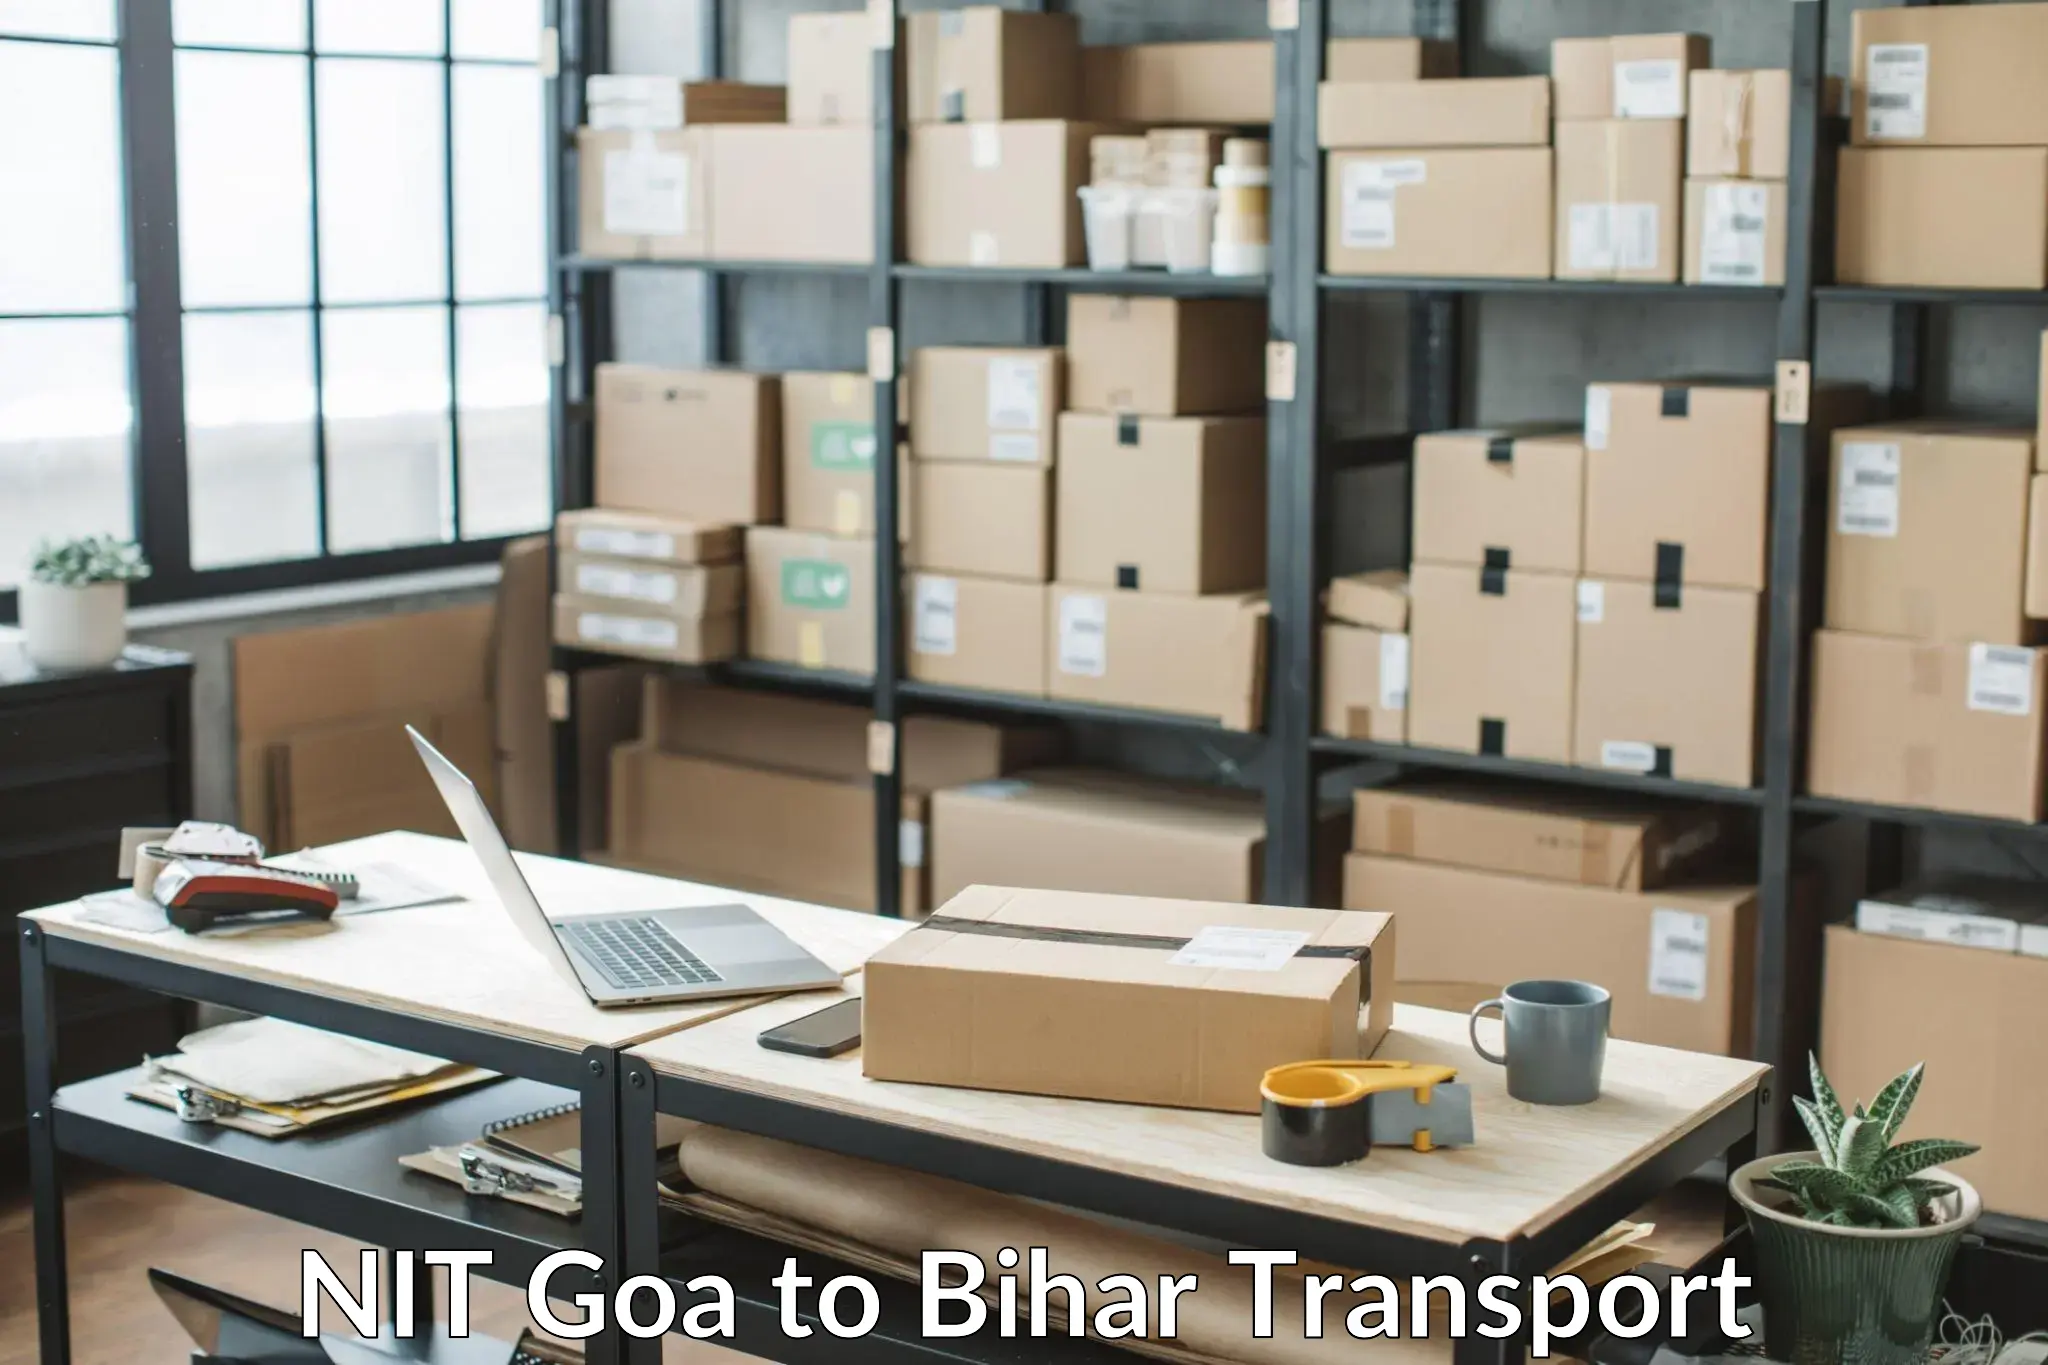 Bike transport service NIT Goa to Barh